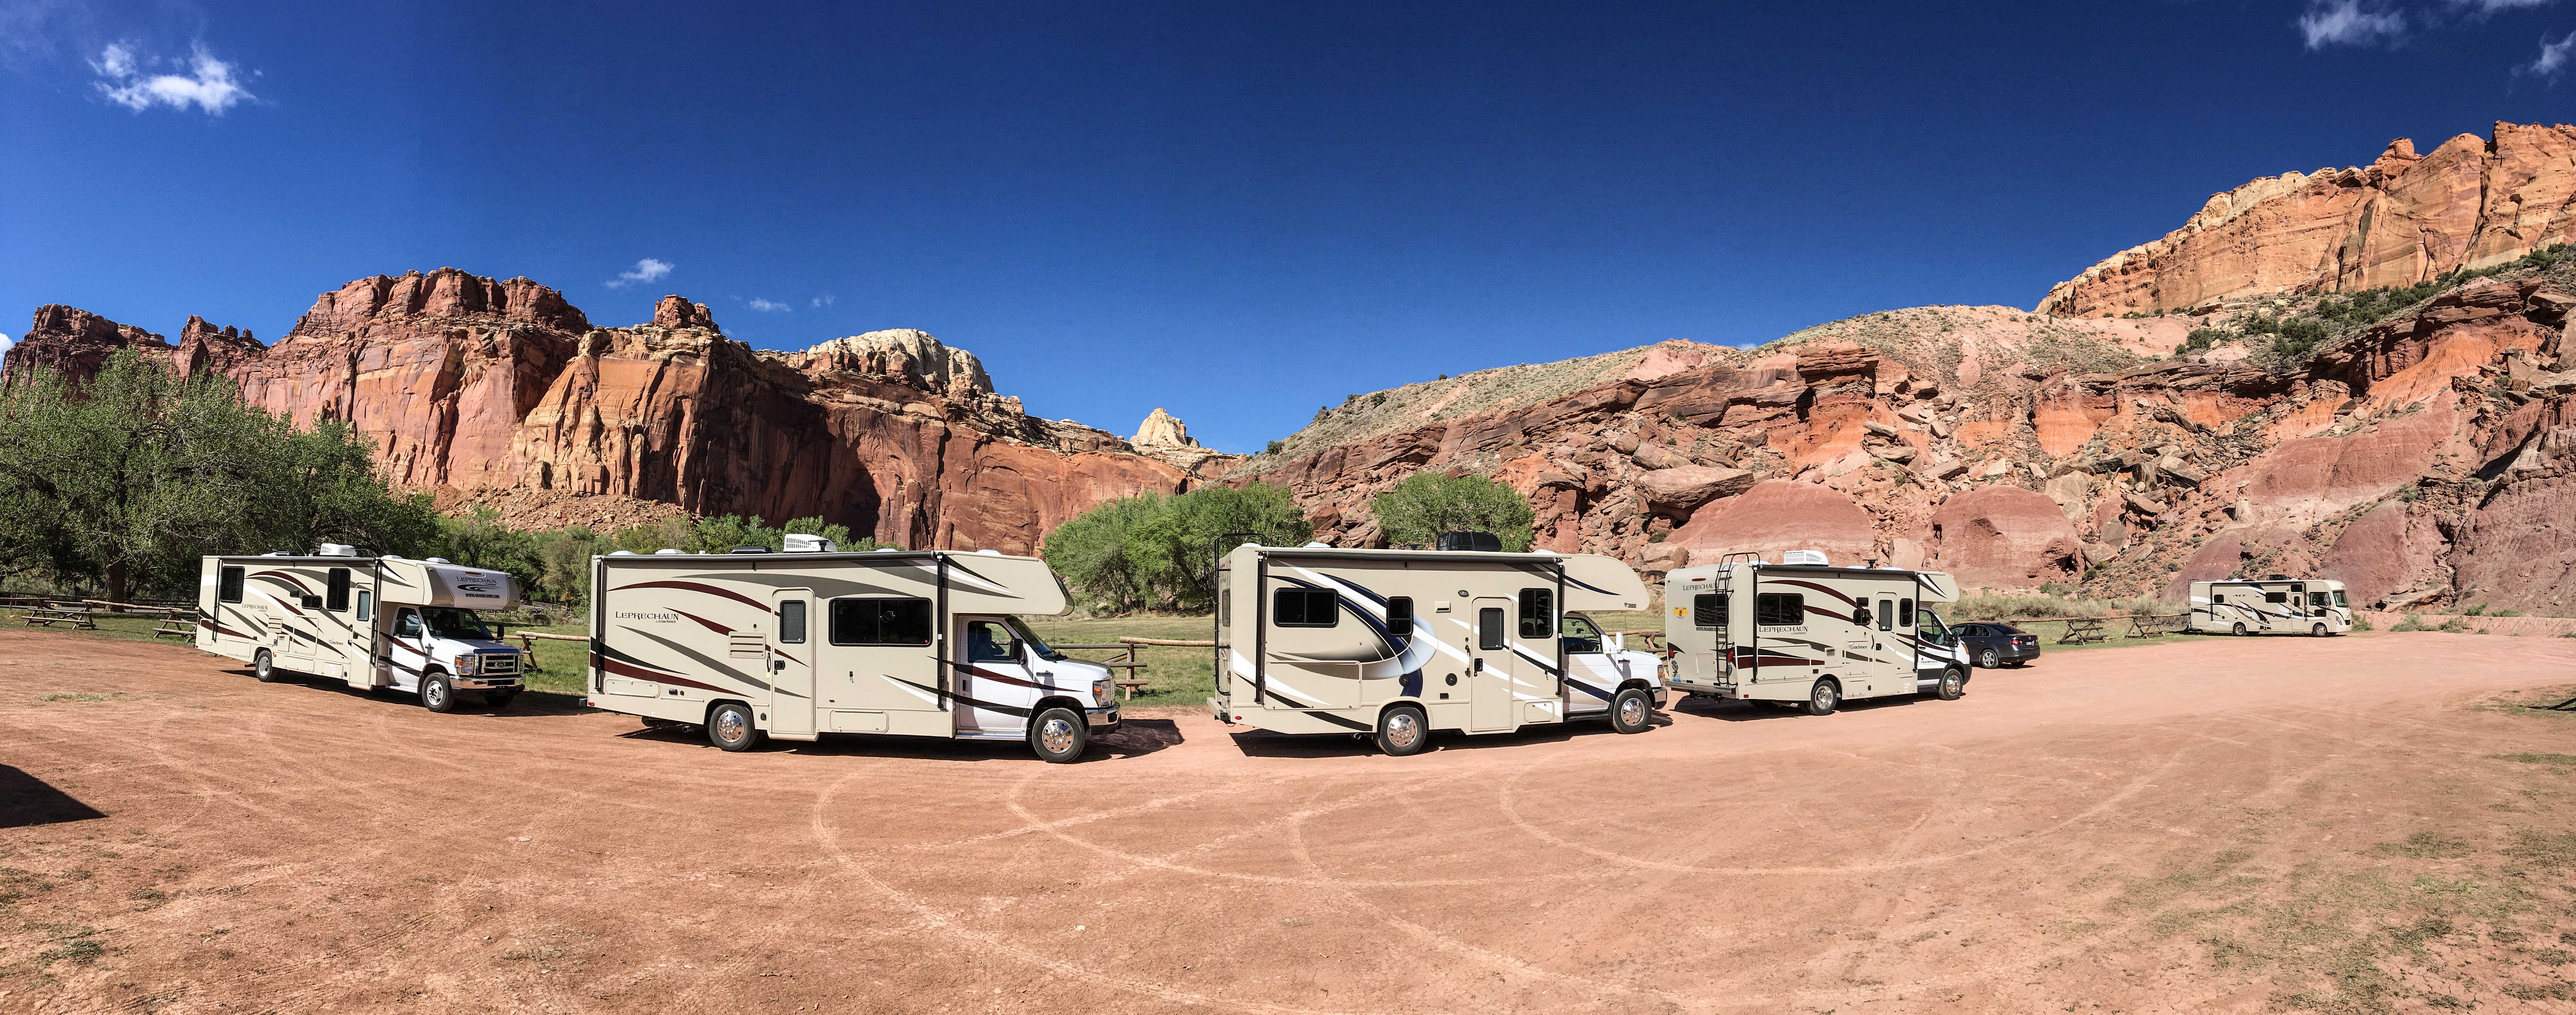 Gruppenreise mit Roadbear-Campern durch die USA